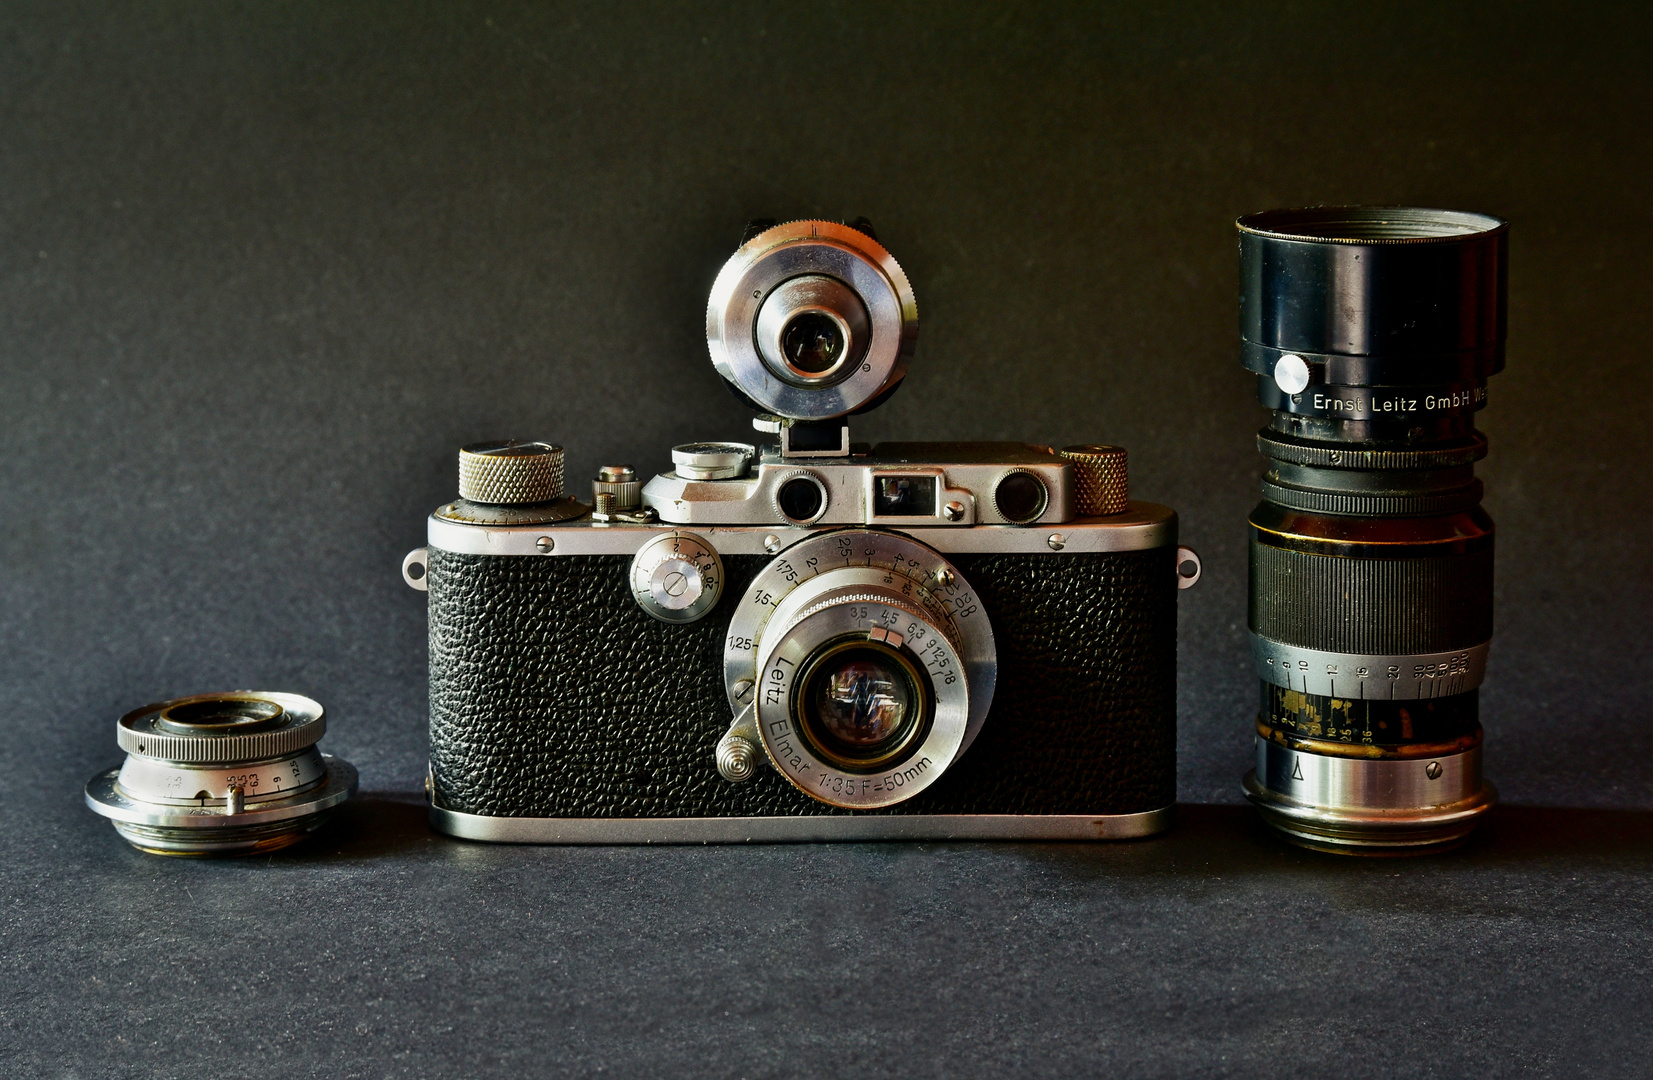  Leica IIIa (G) Kamera Willi Hahn von 1936